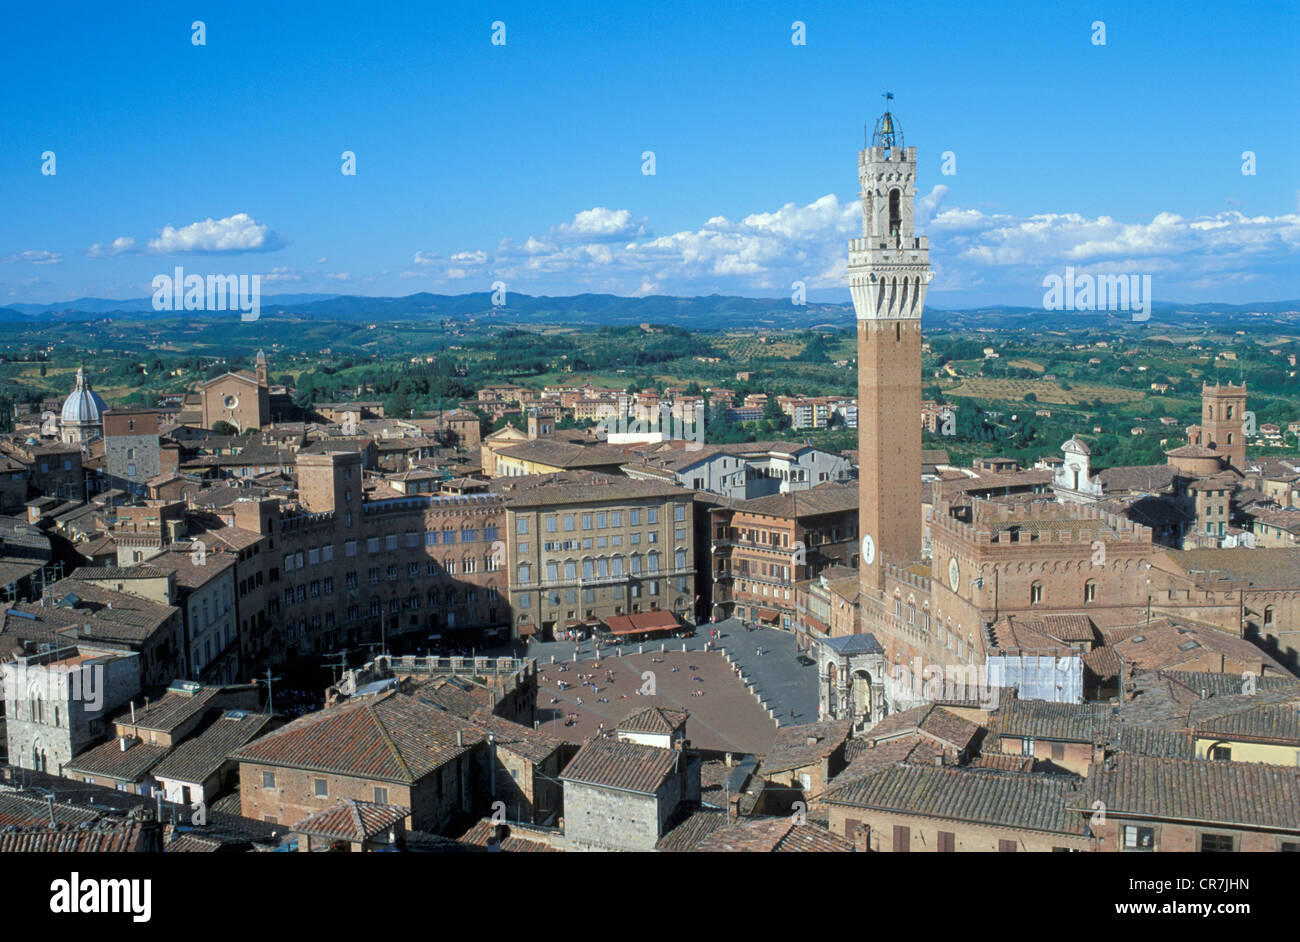 L'Italia, Toscana, Siena, patrimonio mondiale dell UNESCO, Piazza del Campo, la piazza principale della città, Palazzo Pubblico (municipio) e la Torre Foto Stock